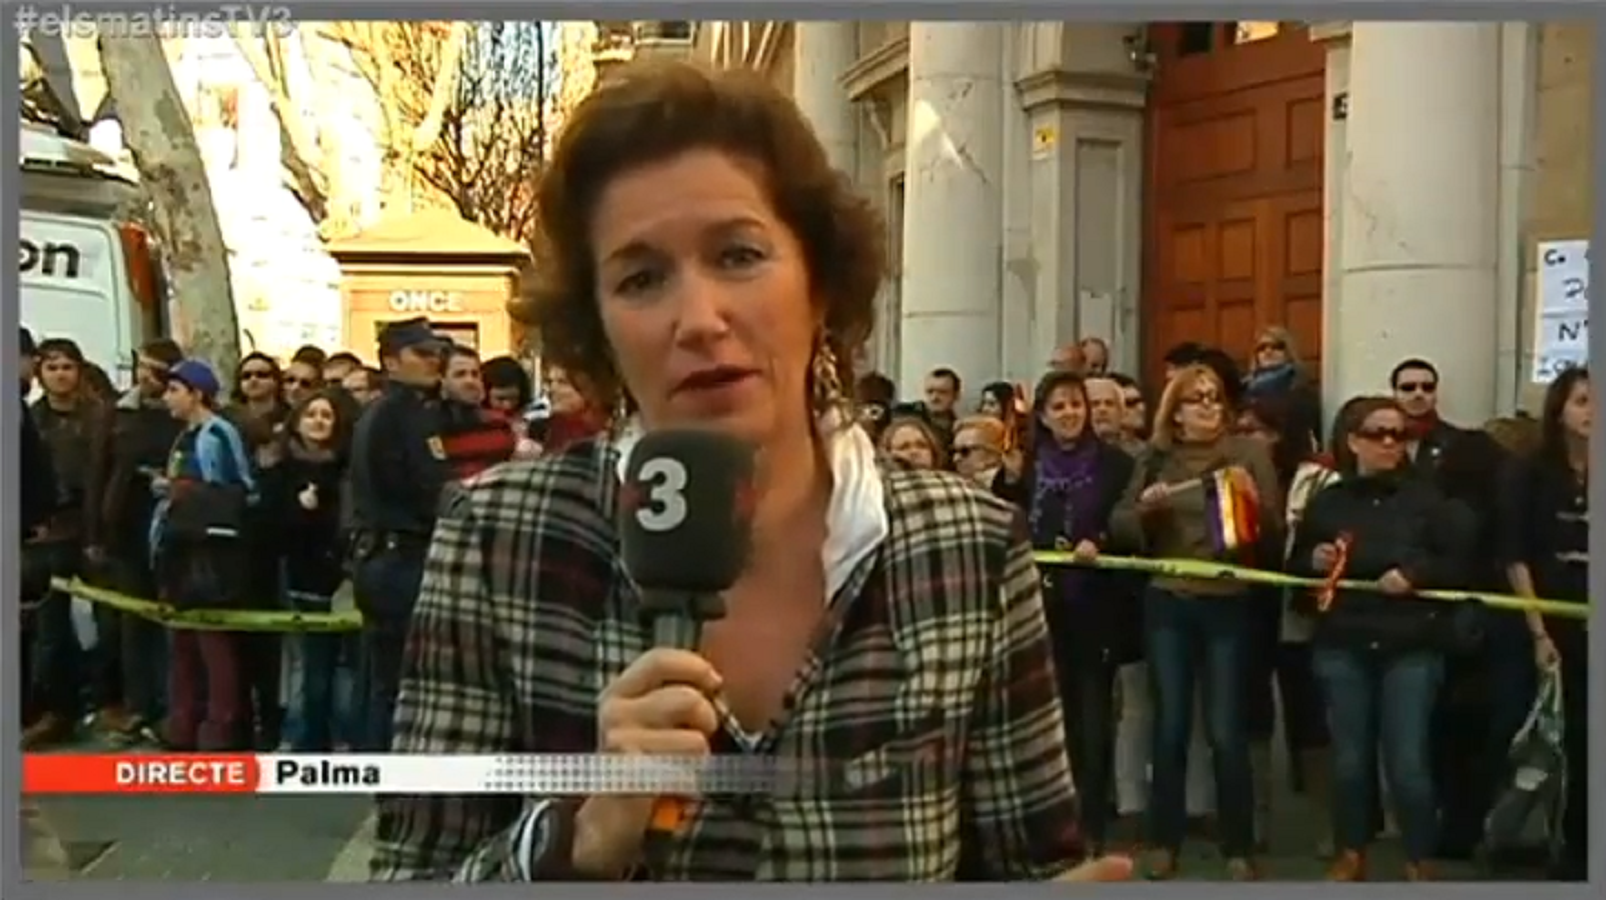 Aparecen pintadas españolistas en el coche de TV3 en las Balears